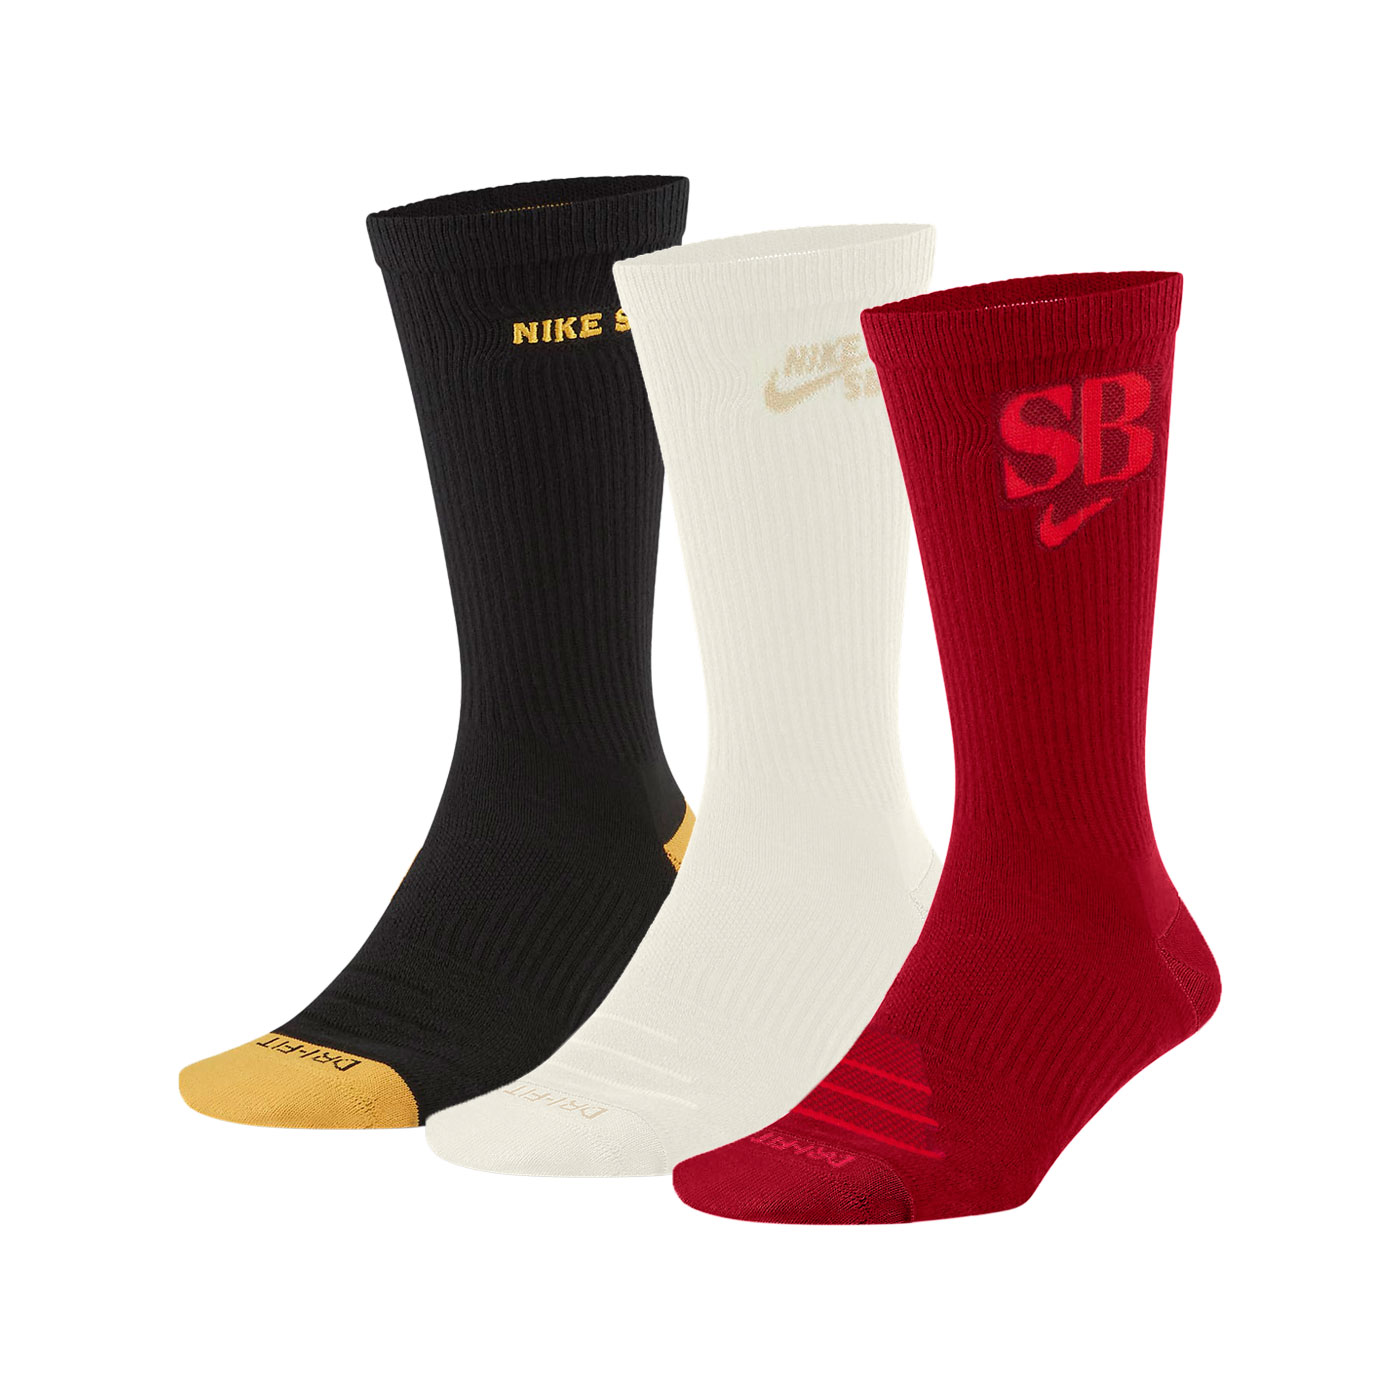 NIKE 襪子(三裝入) DA8852-902 - 黑白紅黃